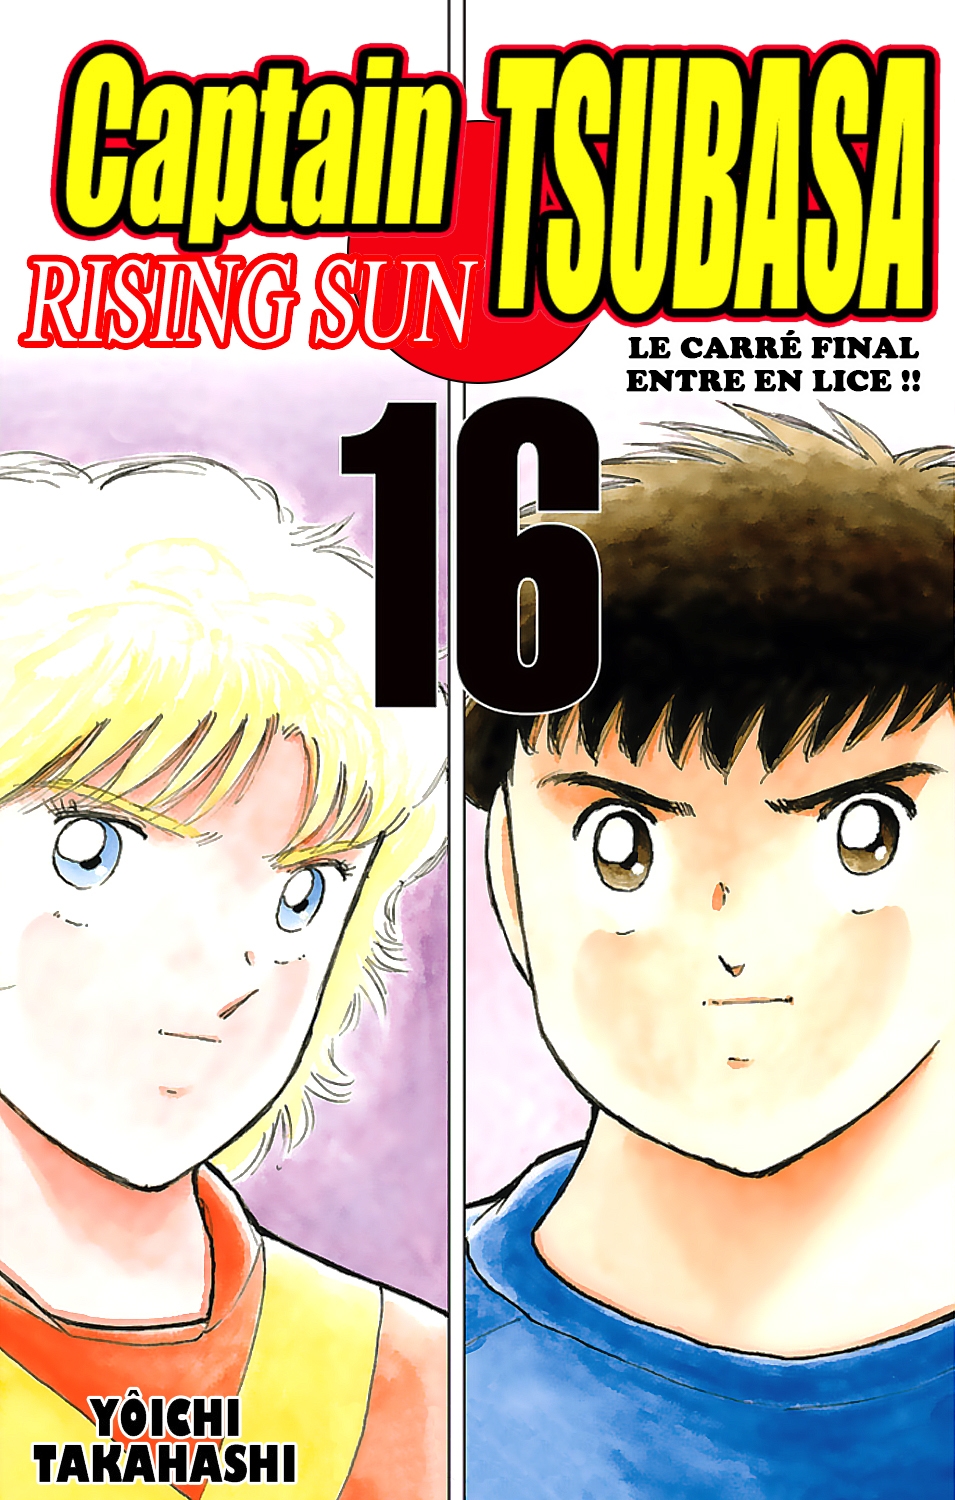 Captain Tsubasa - Rising Sun: Chapter 121 - Page 1